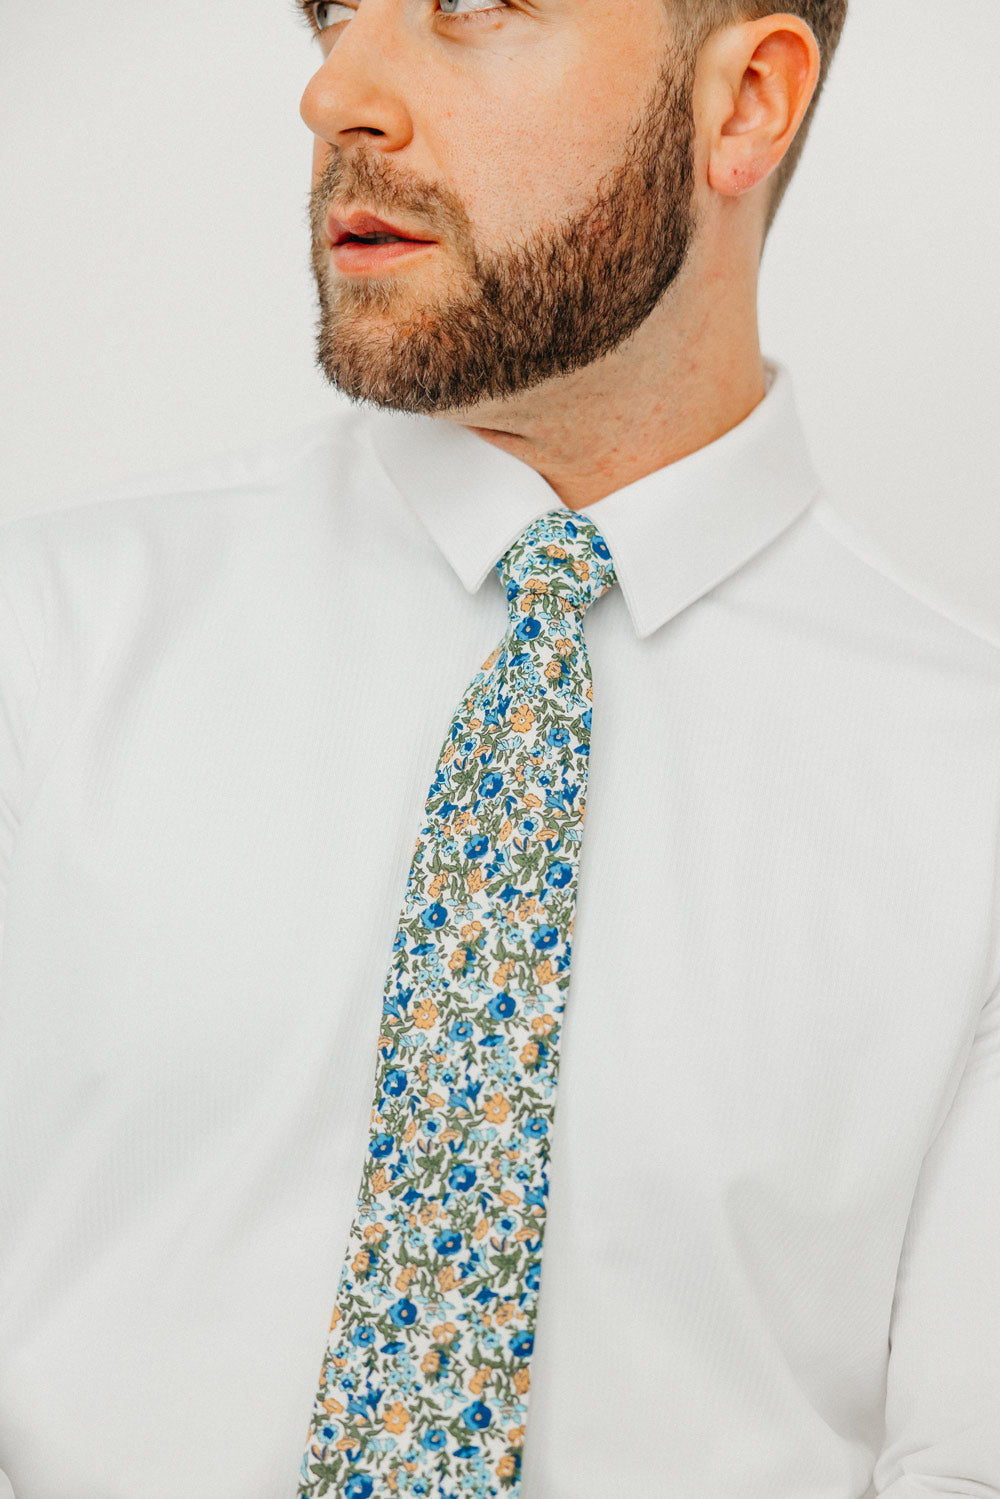 Alpine Blum tie worn with a white shirt.